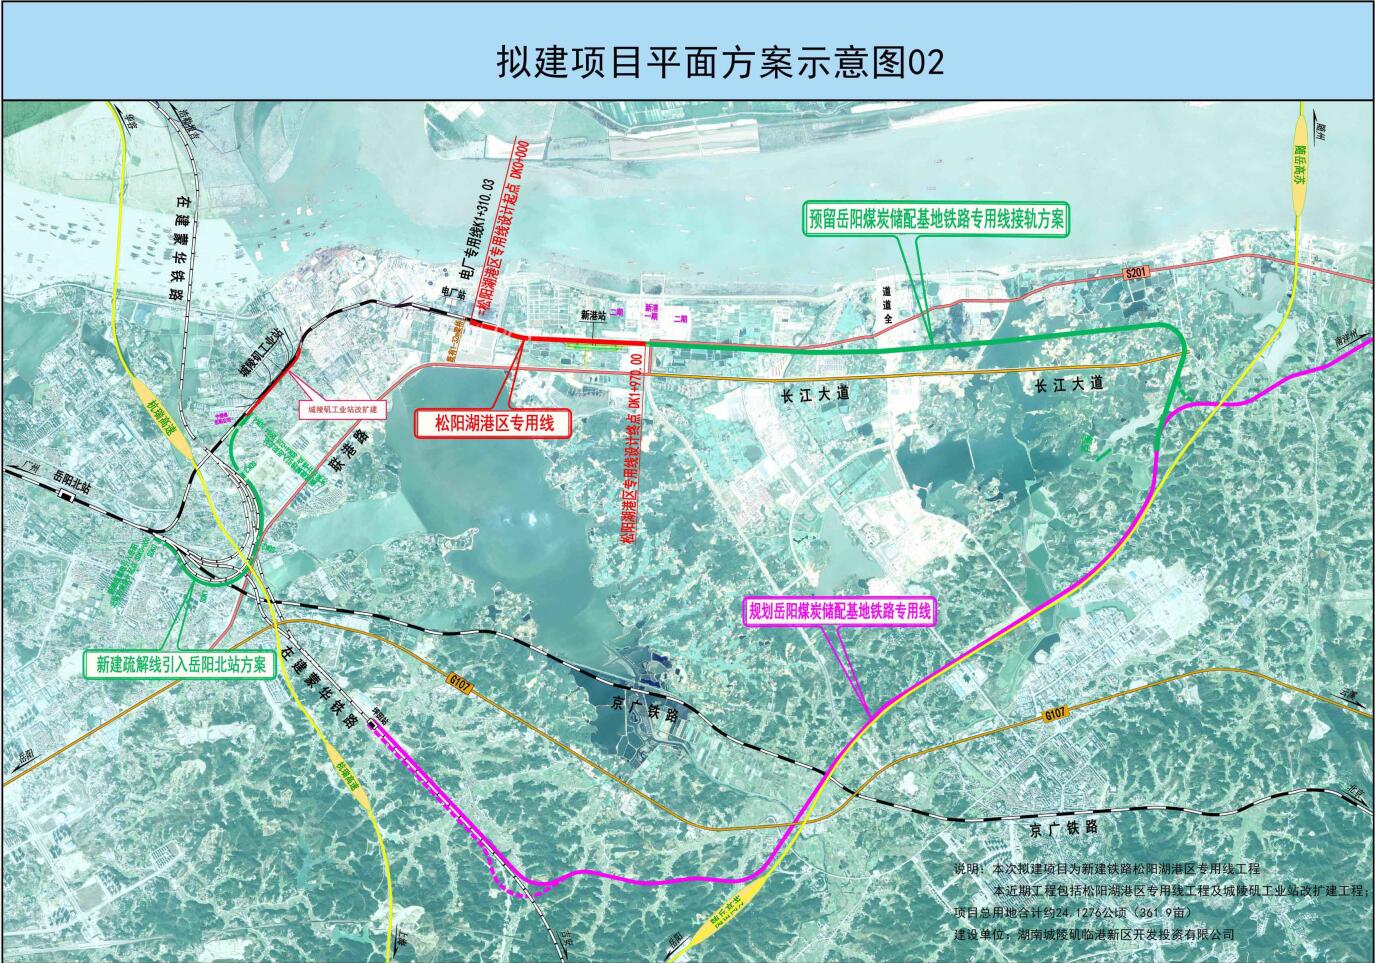 新建铁路松阳湖港区专用线规划选址论证报告顺利通过审查